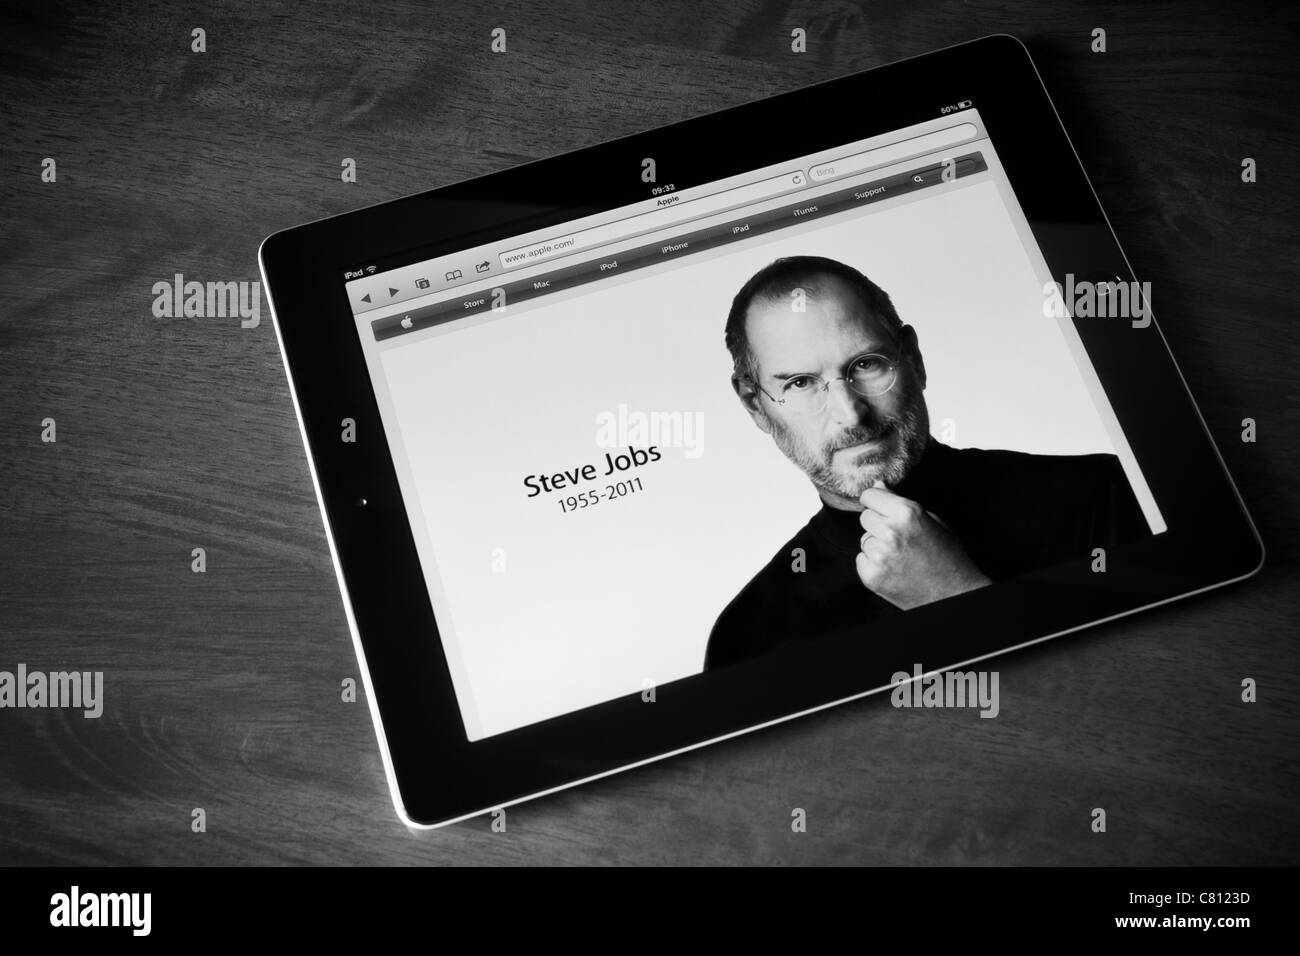 Apple Ipad2 zeigt Foto von Steve Jobs, Gründer von Apple Computer, die im Alter von 56 Jahren gestorben ist. In BW verarbeitet. Stockfoto